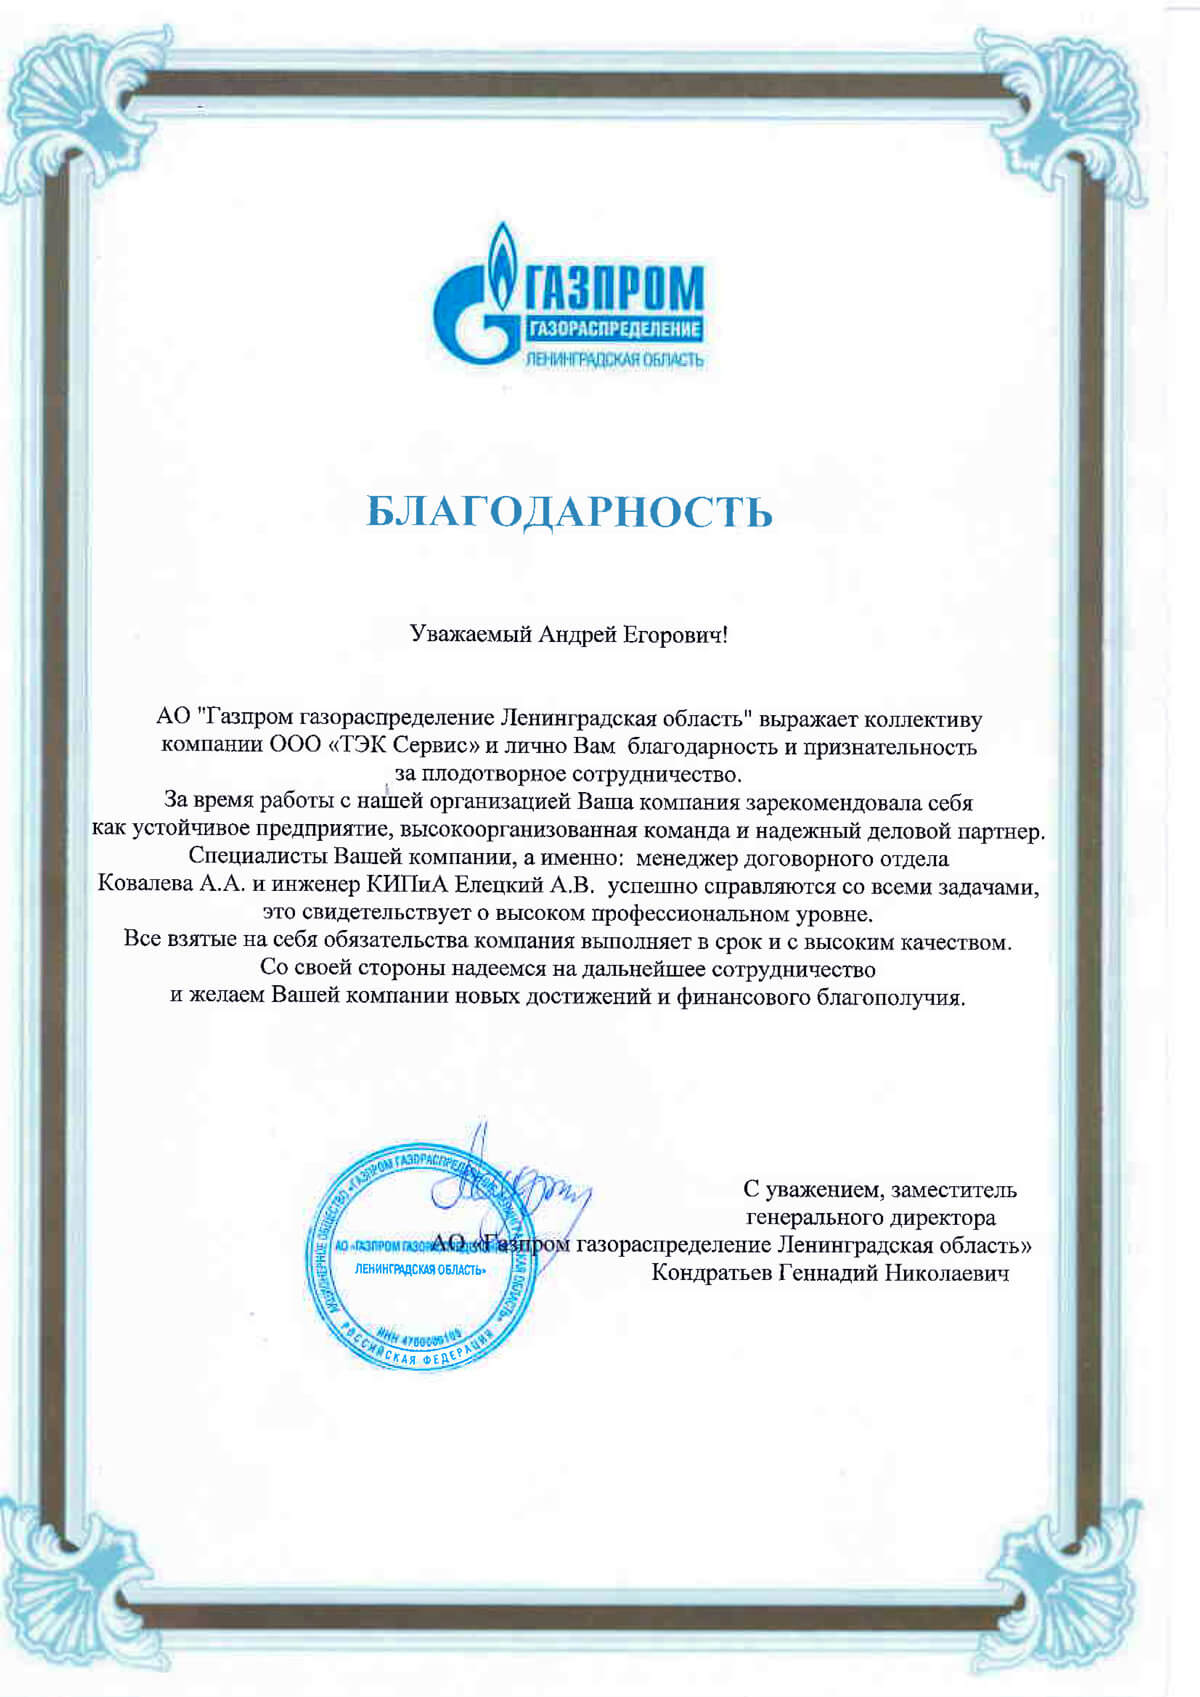 Благодарность за сотрудничество Газпром письмо ТЭК СПб